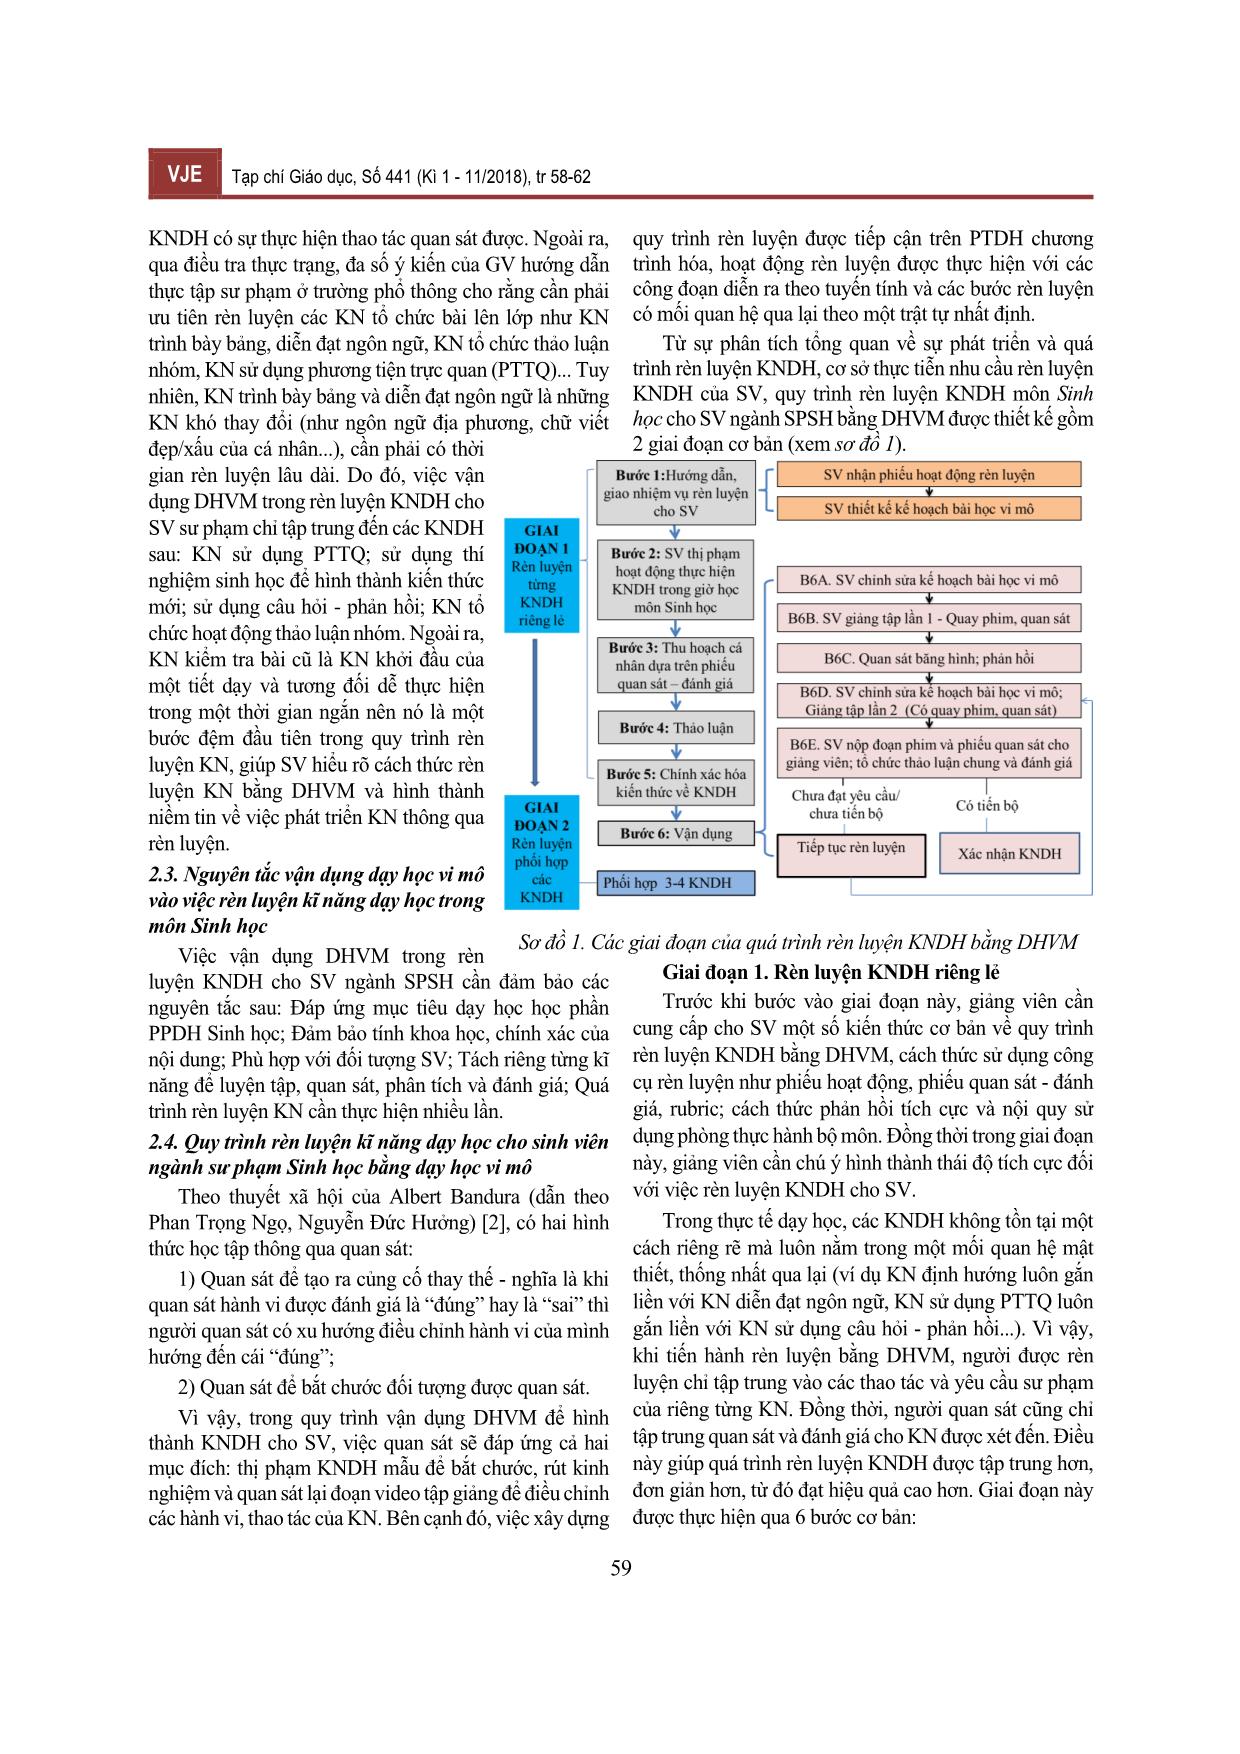 Quy trình vận dụng dạy học vi mô trong rèn luyện kĩ năng dạy học cho sinh viên ngành Sư phạm Sinh học trang 2